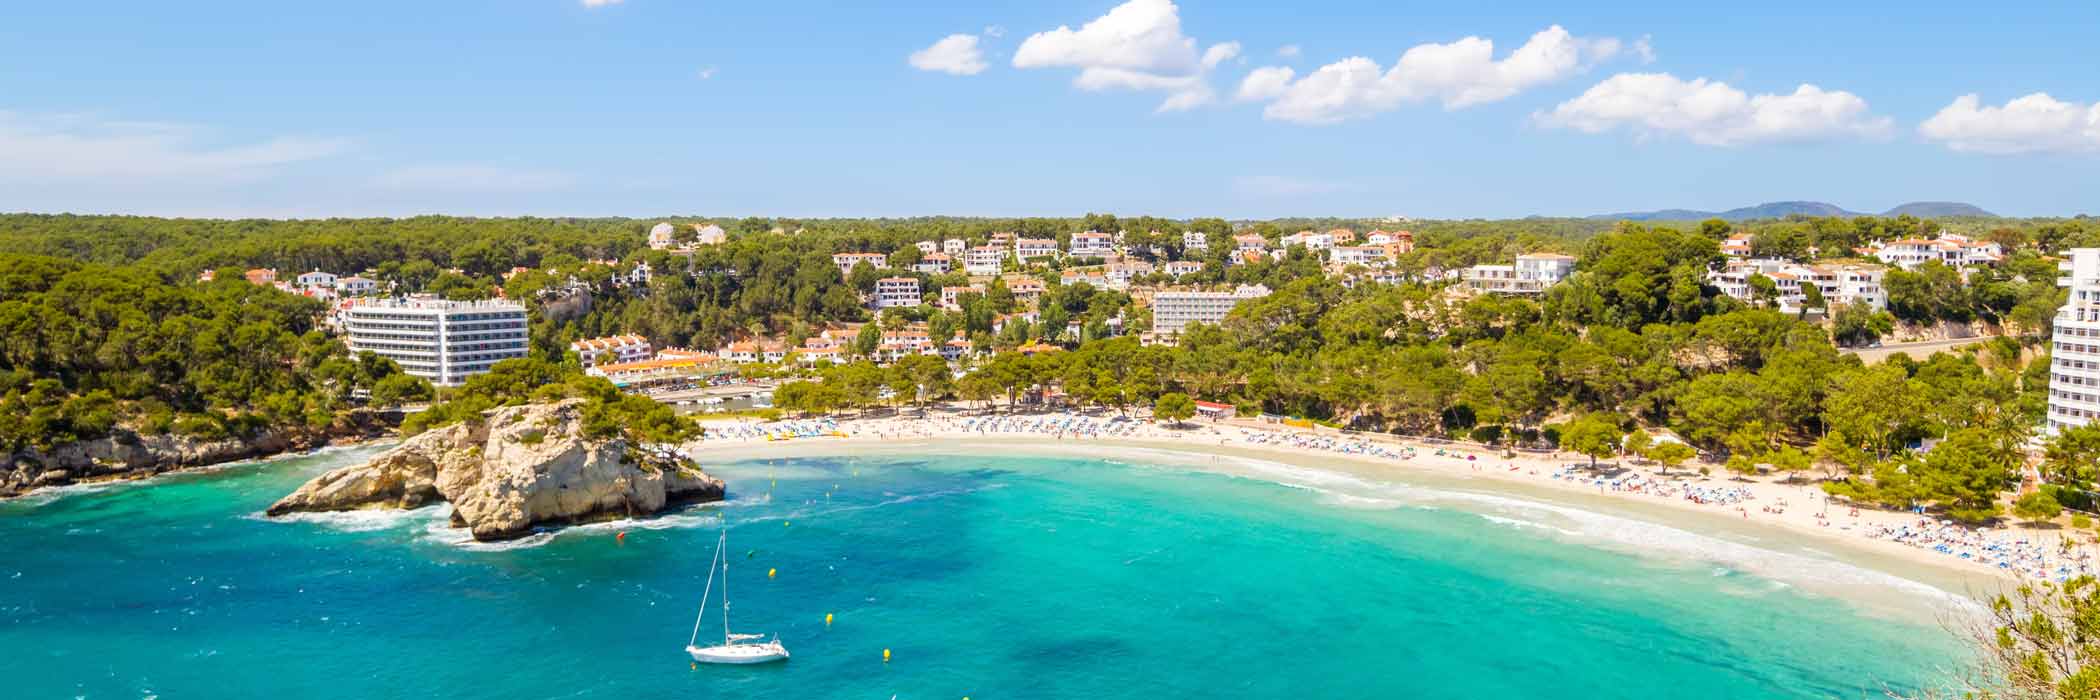 Cheap Holidays To Menorca